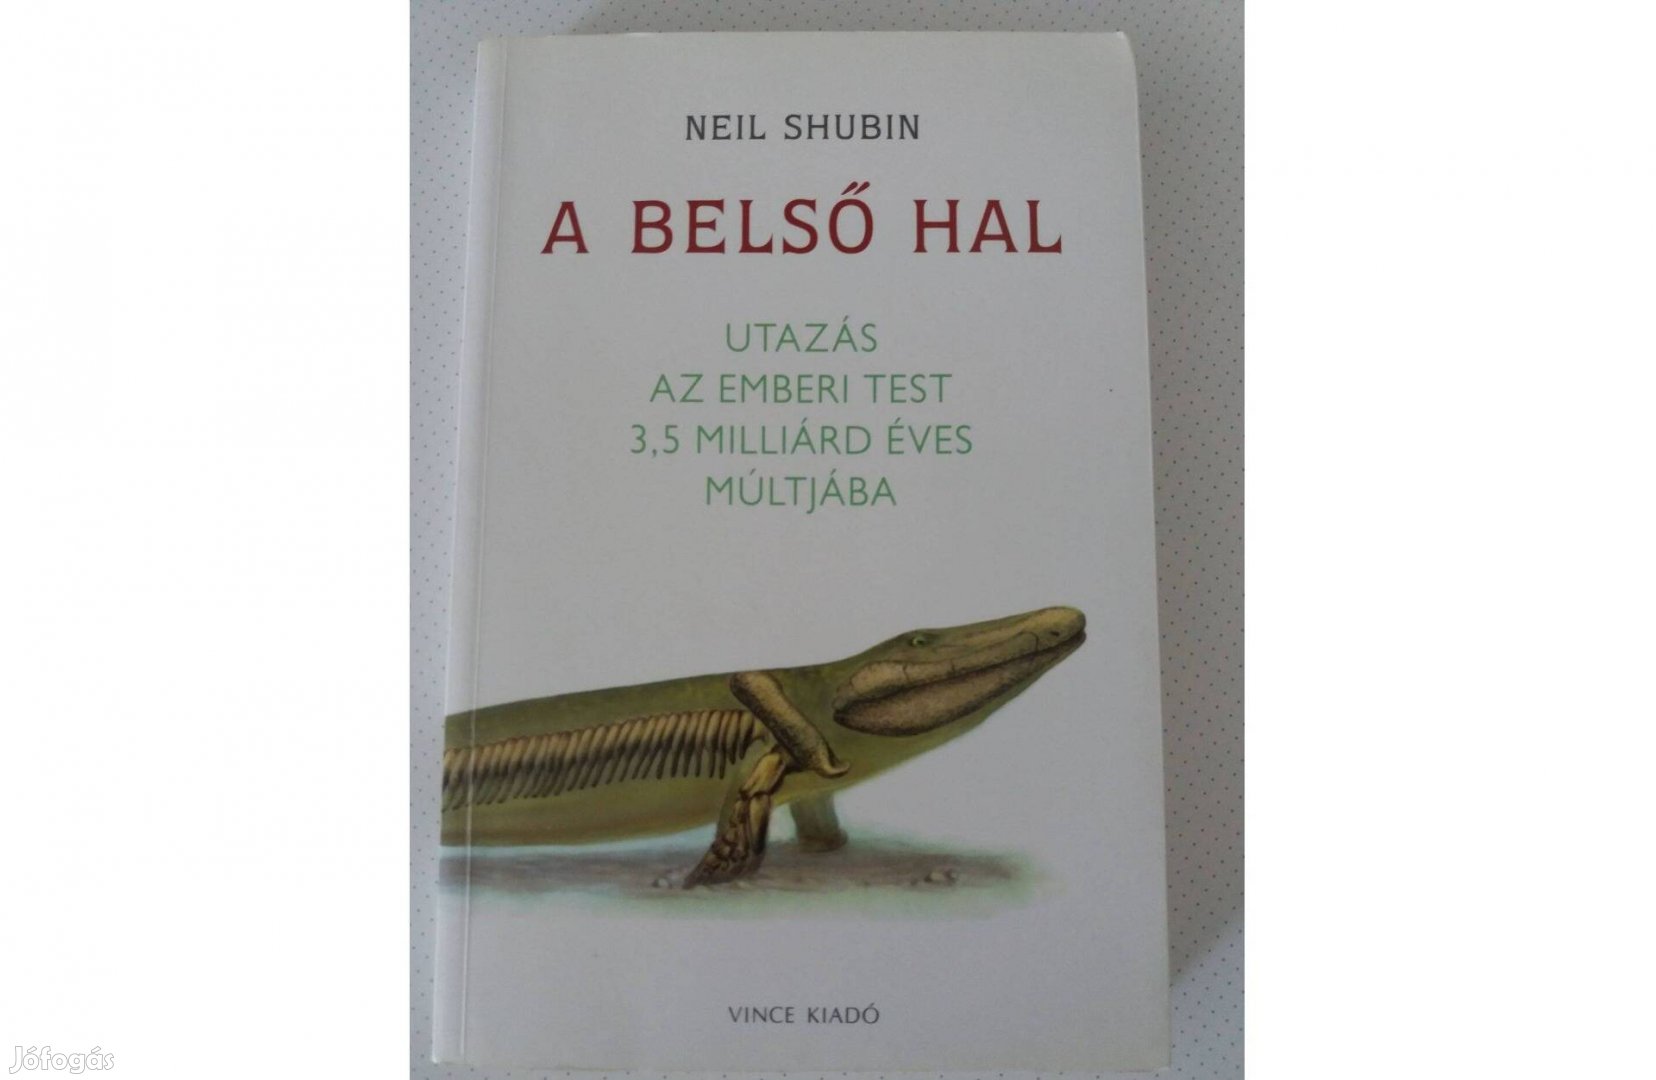 Neil Shubin: A belső hal